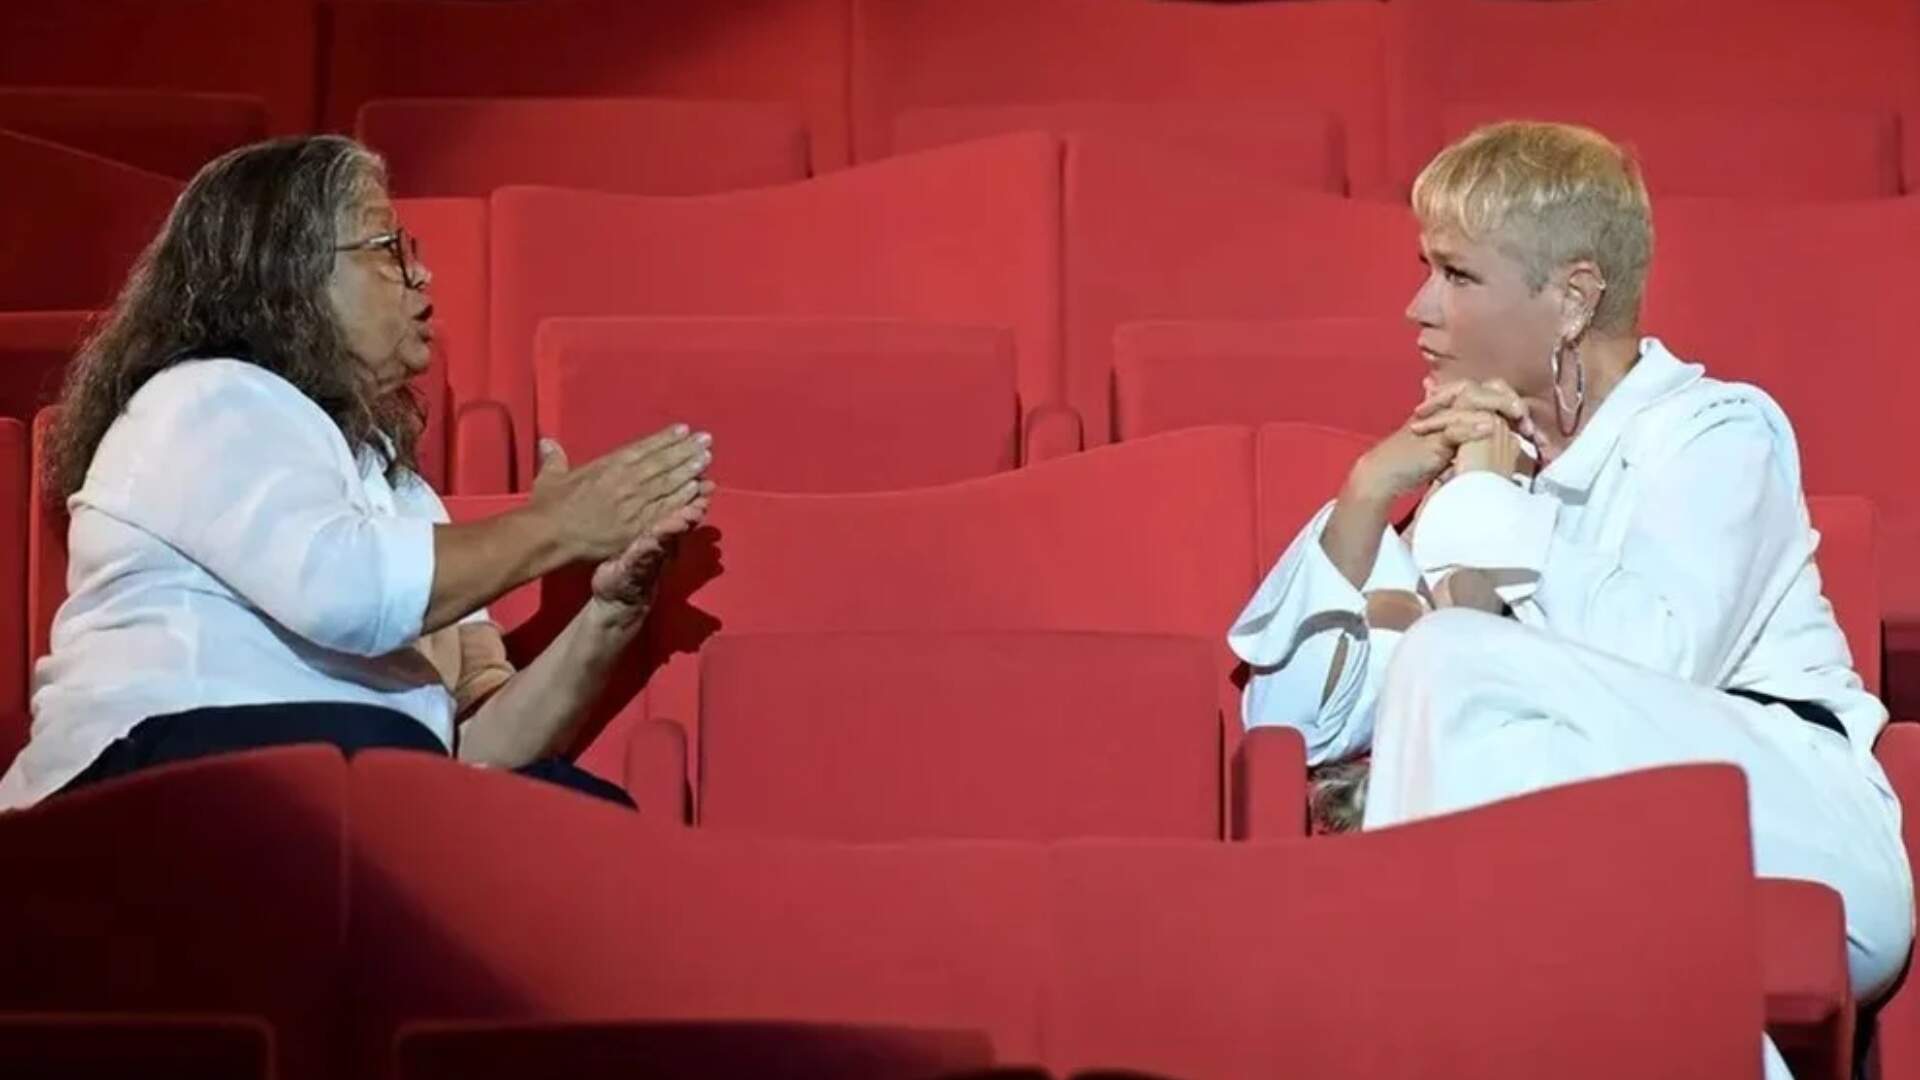 Postura da ex-empresária de Xuxa assusta fãs durante documentário e apresentadora desabafa: “Eu era uma marionete” - Metropolitana FM